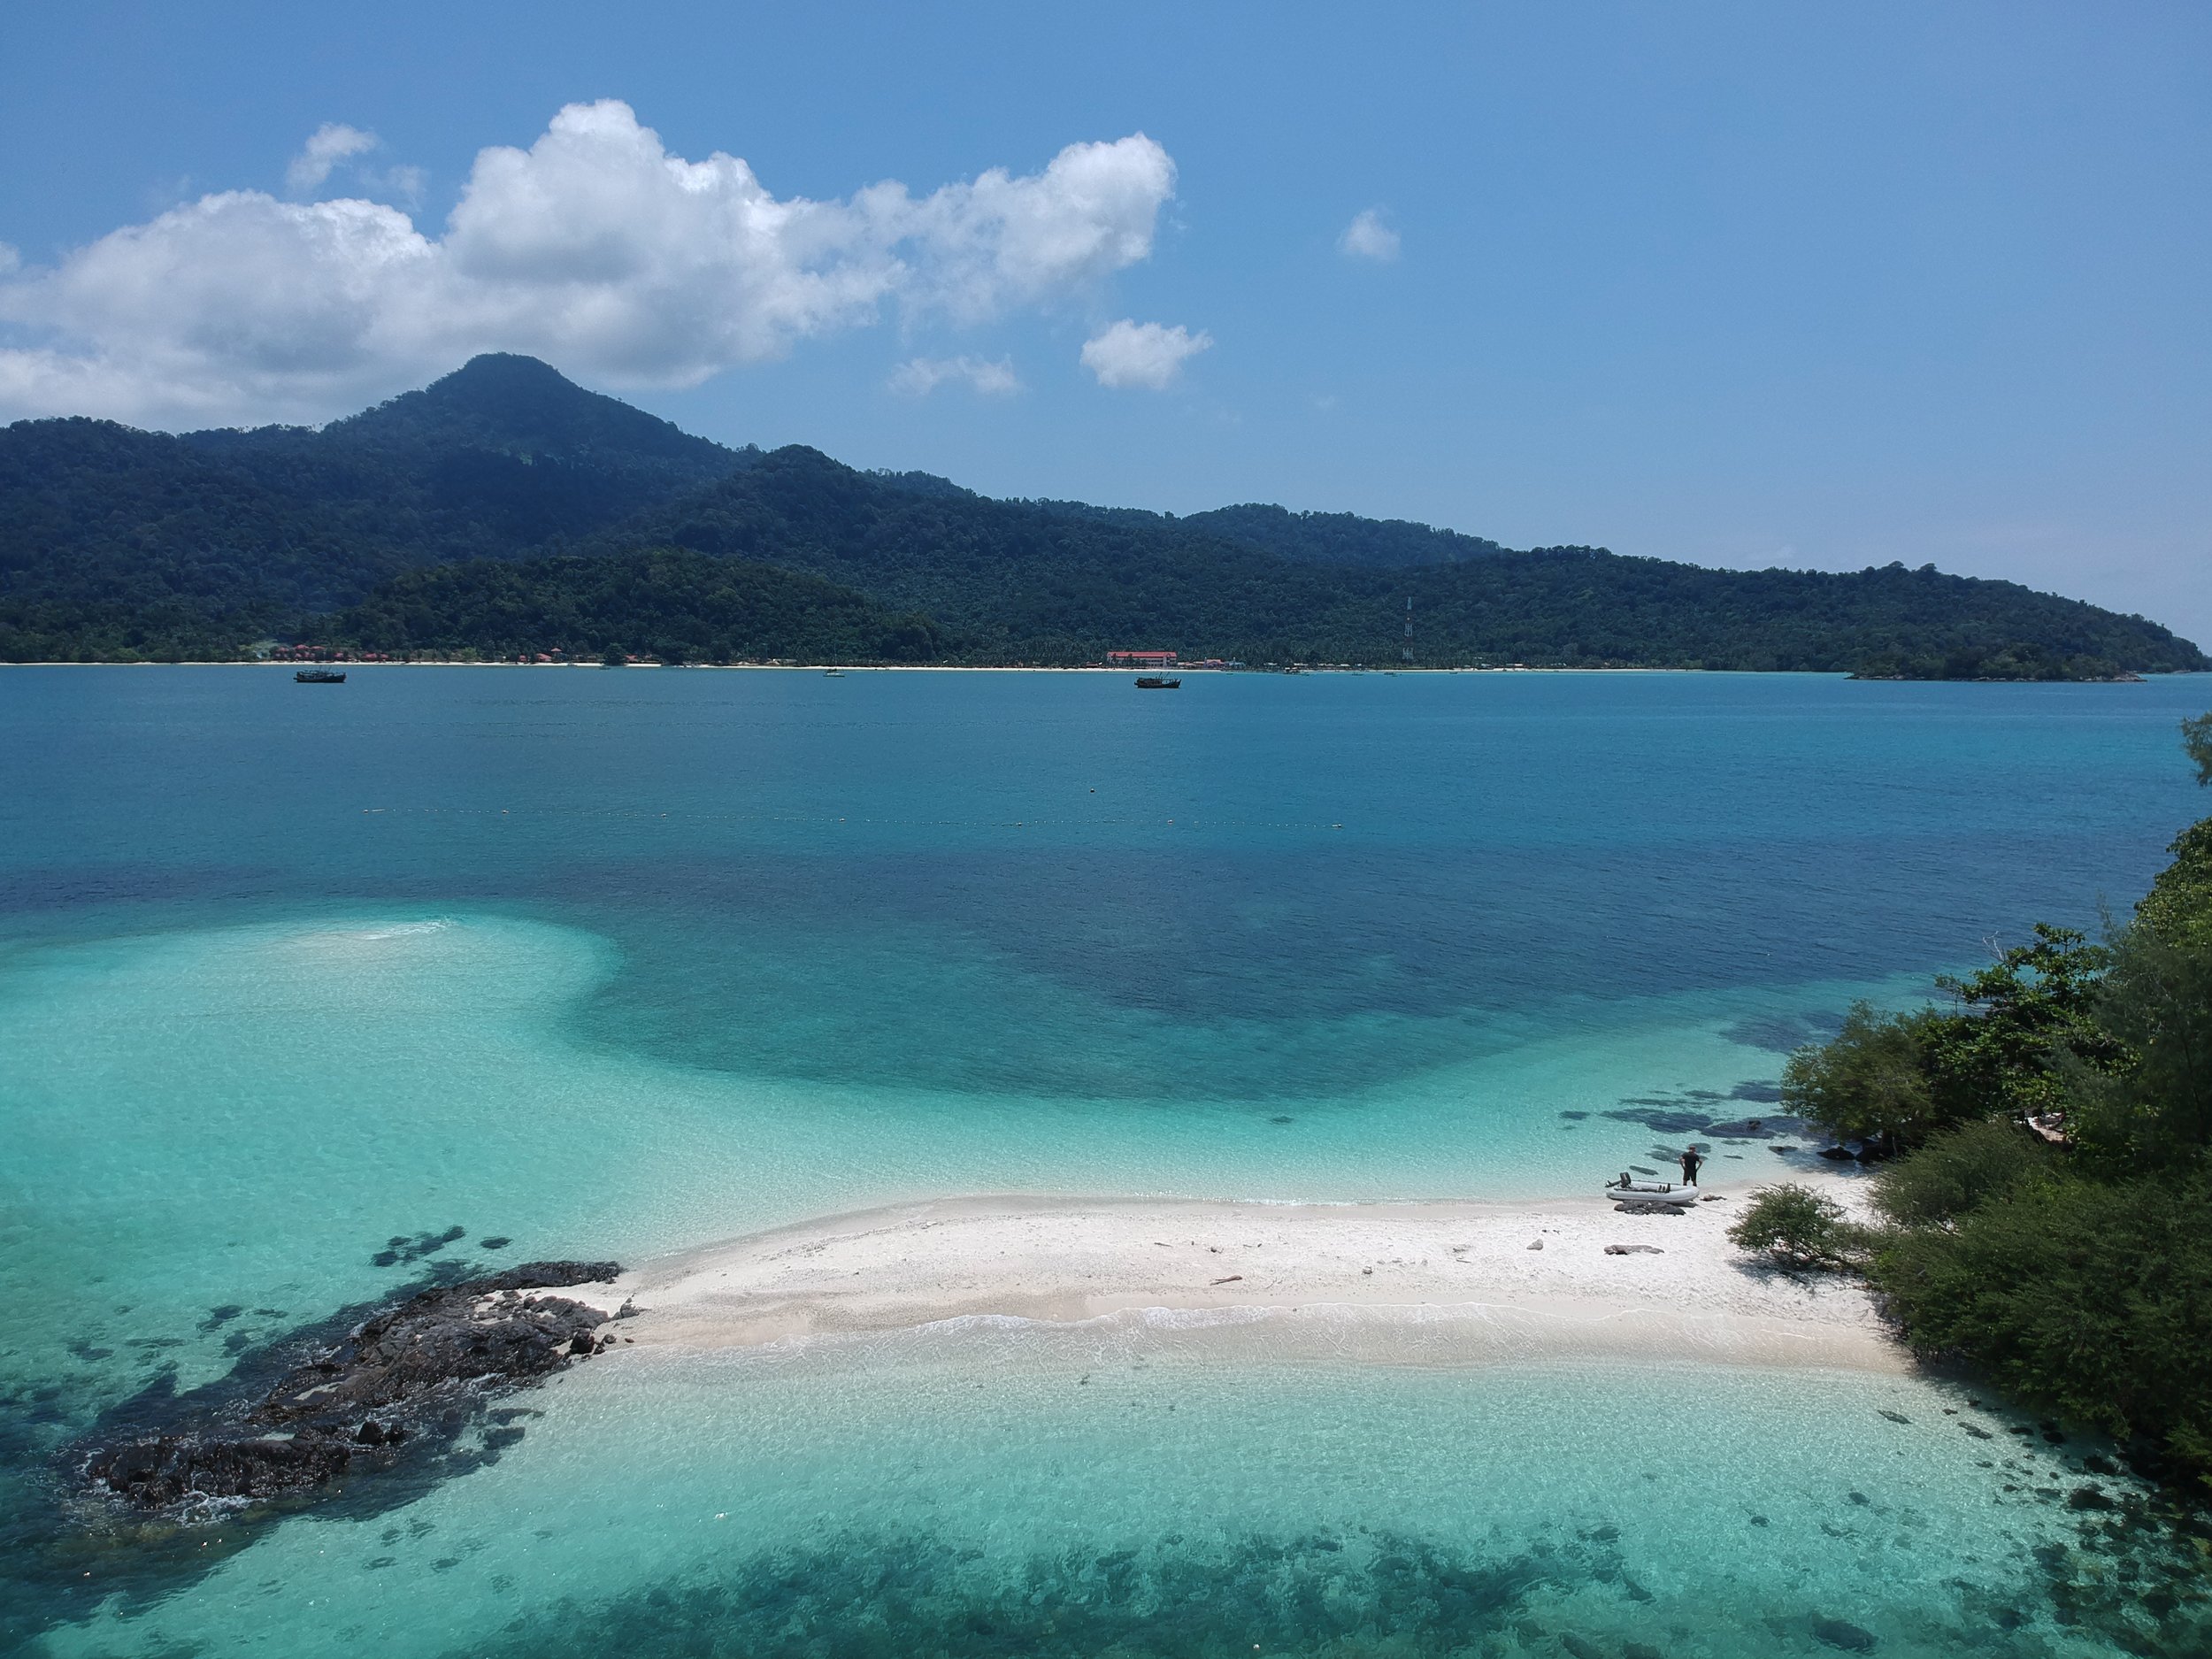 Pulau Mentigi, 70 meters long and 20 meters wide